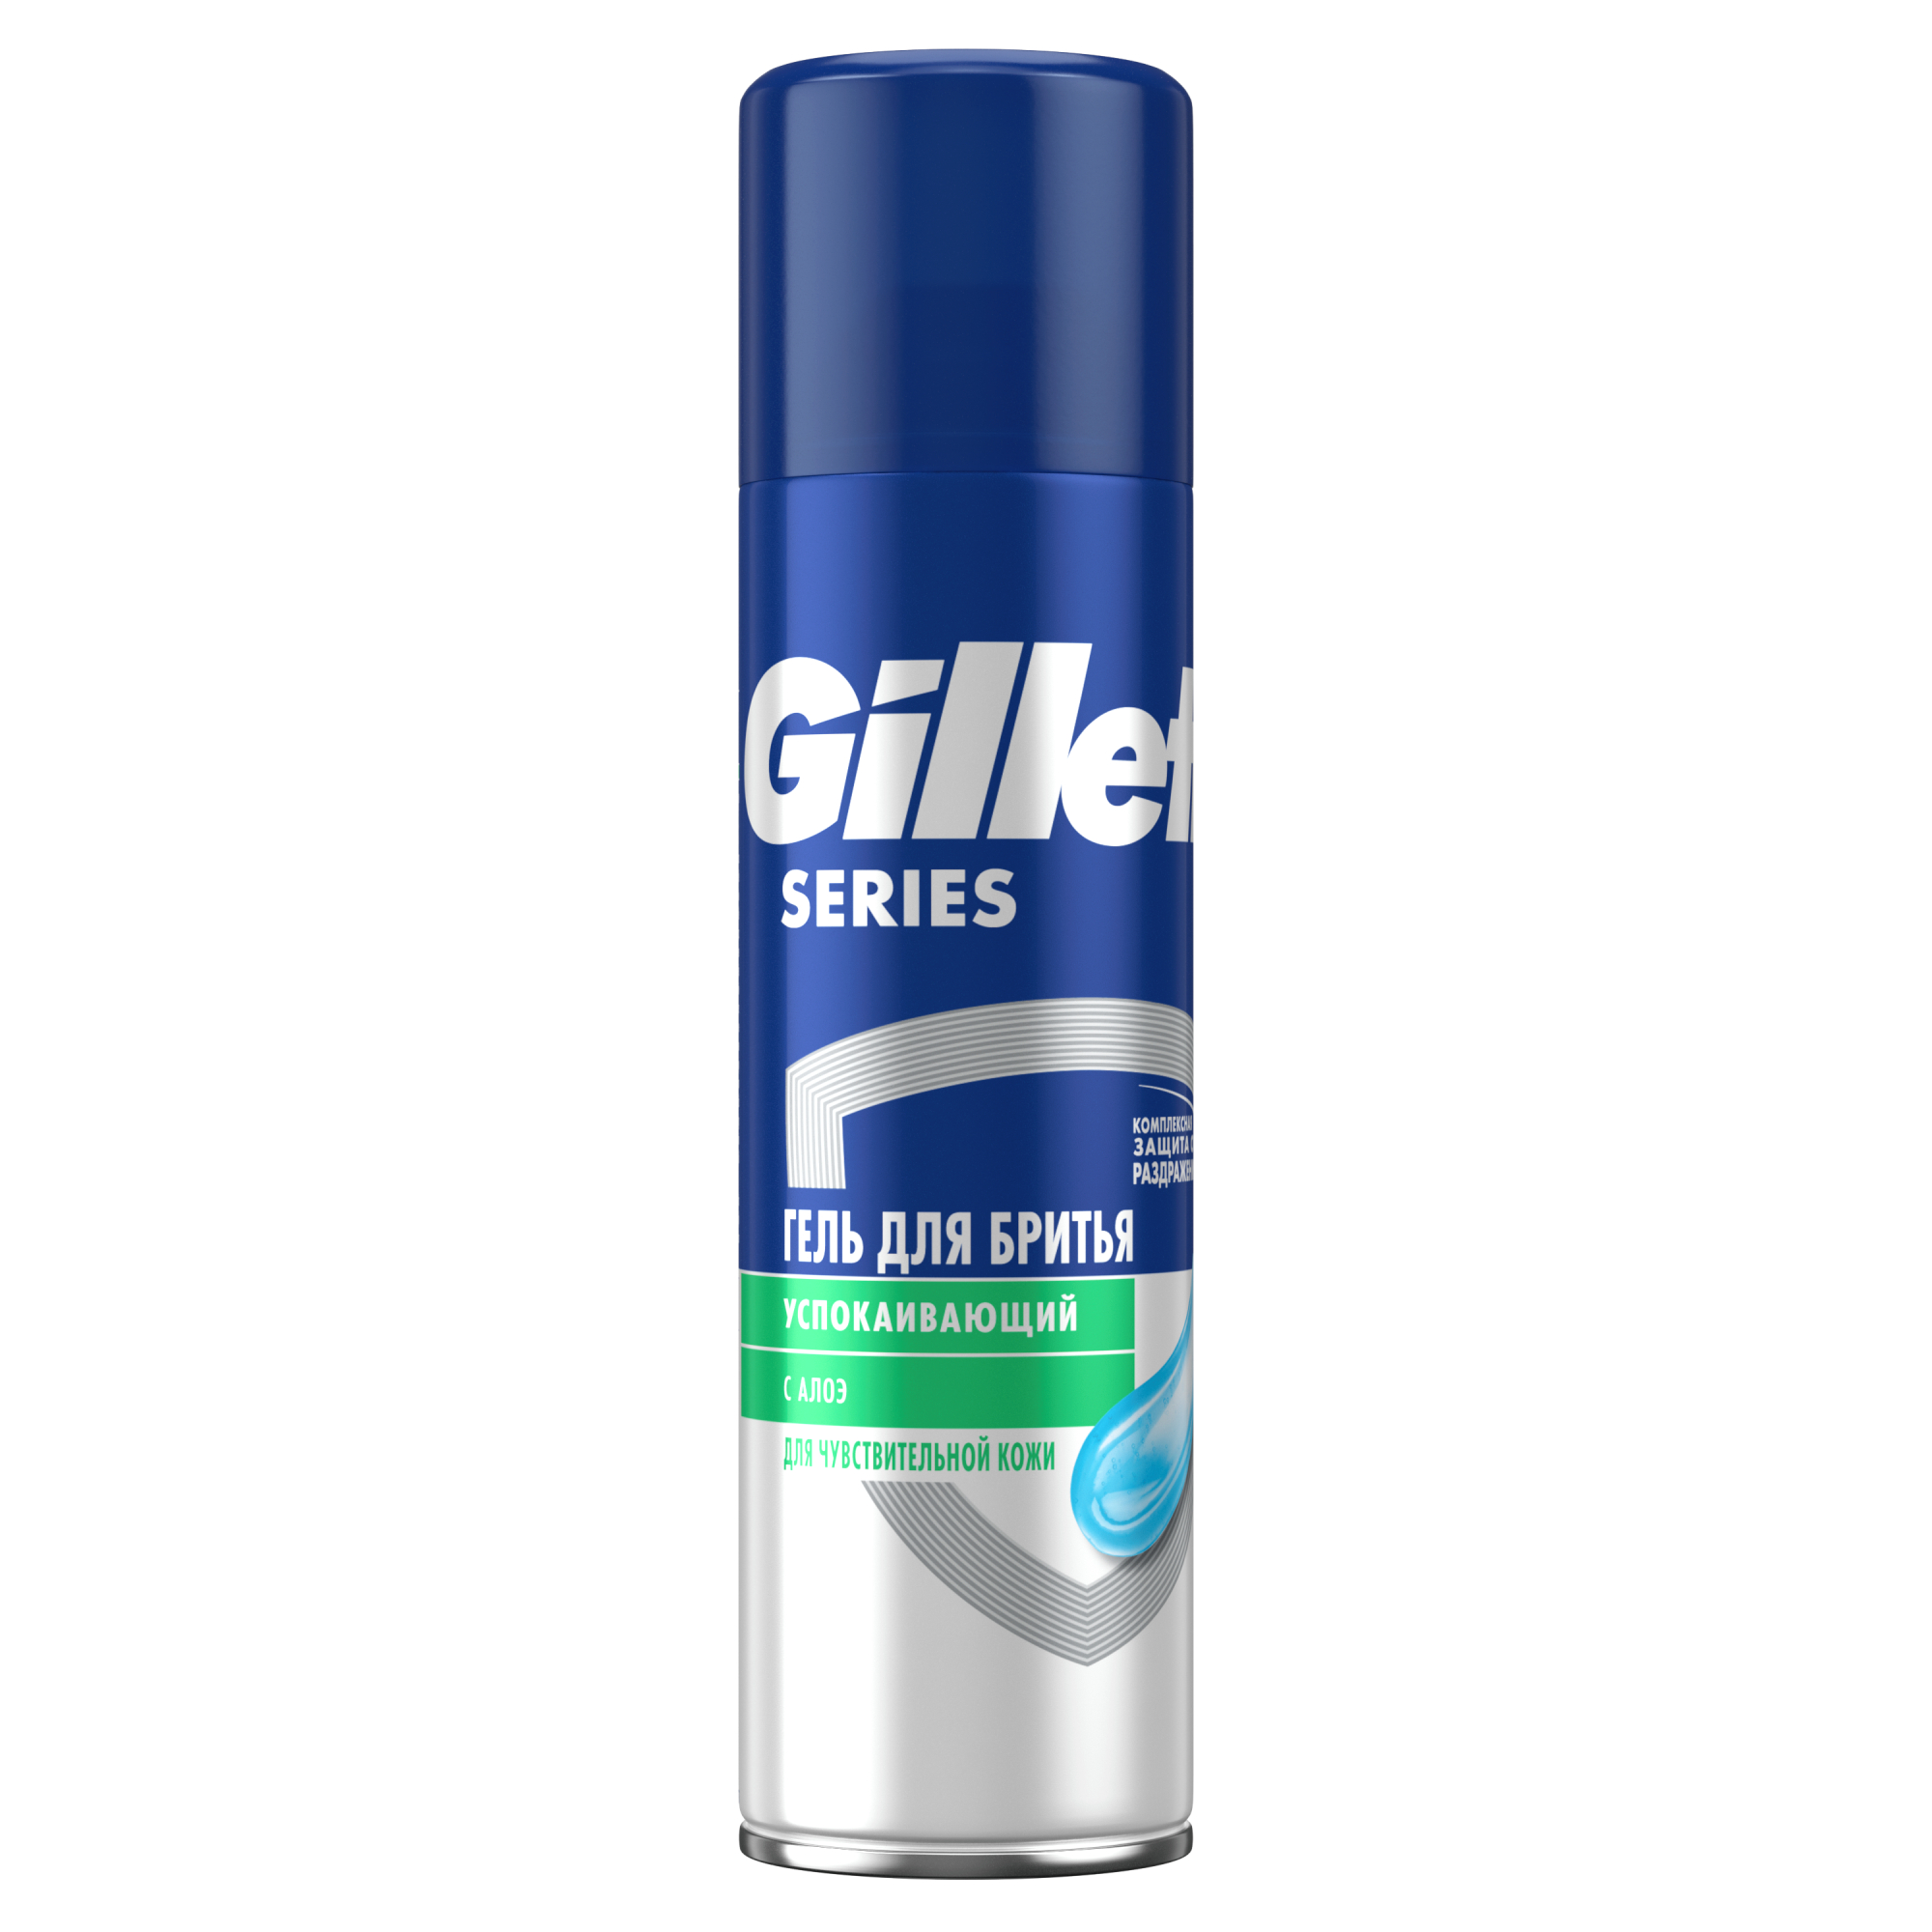 Гель для бритья Gillette Series Sensitive, для чувствительной кожи, мужской, 200 мл пена для бритья gillette для чувсвительной кожи 200 мл